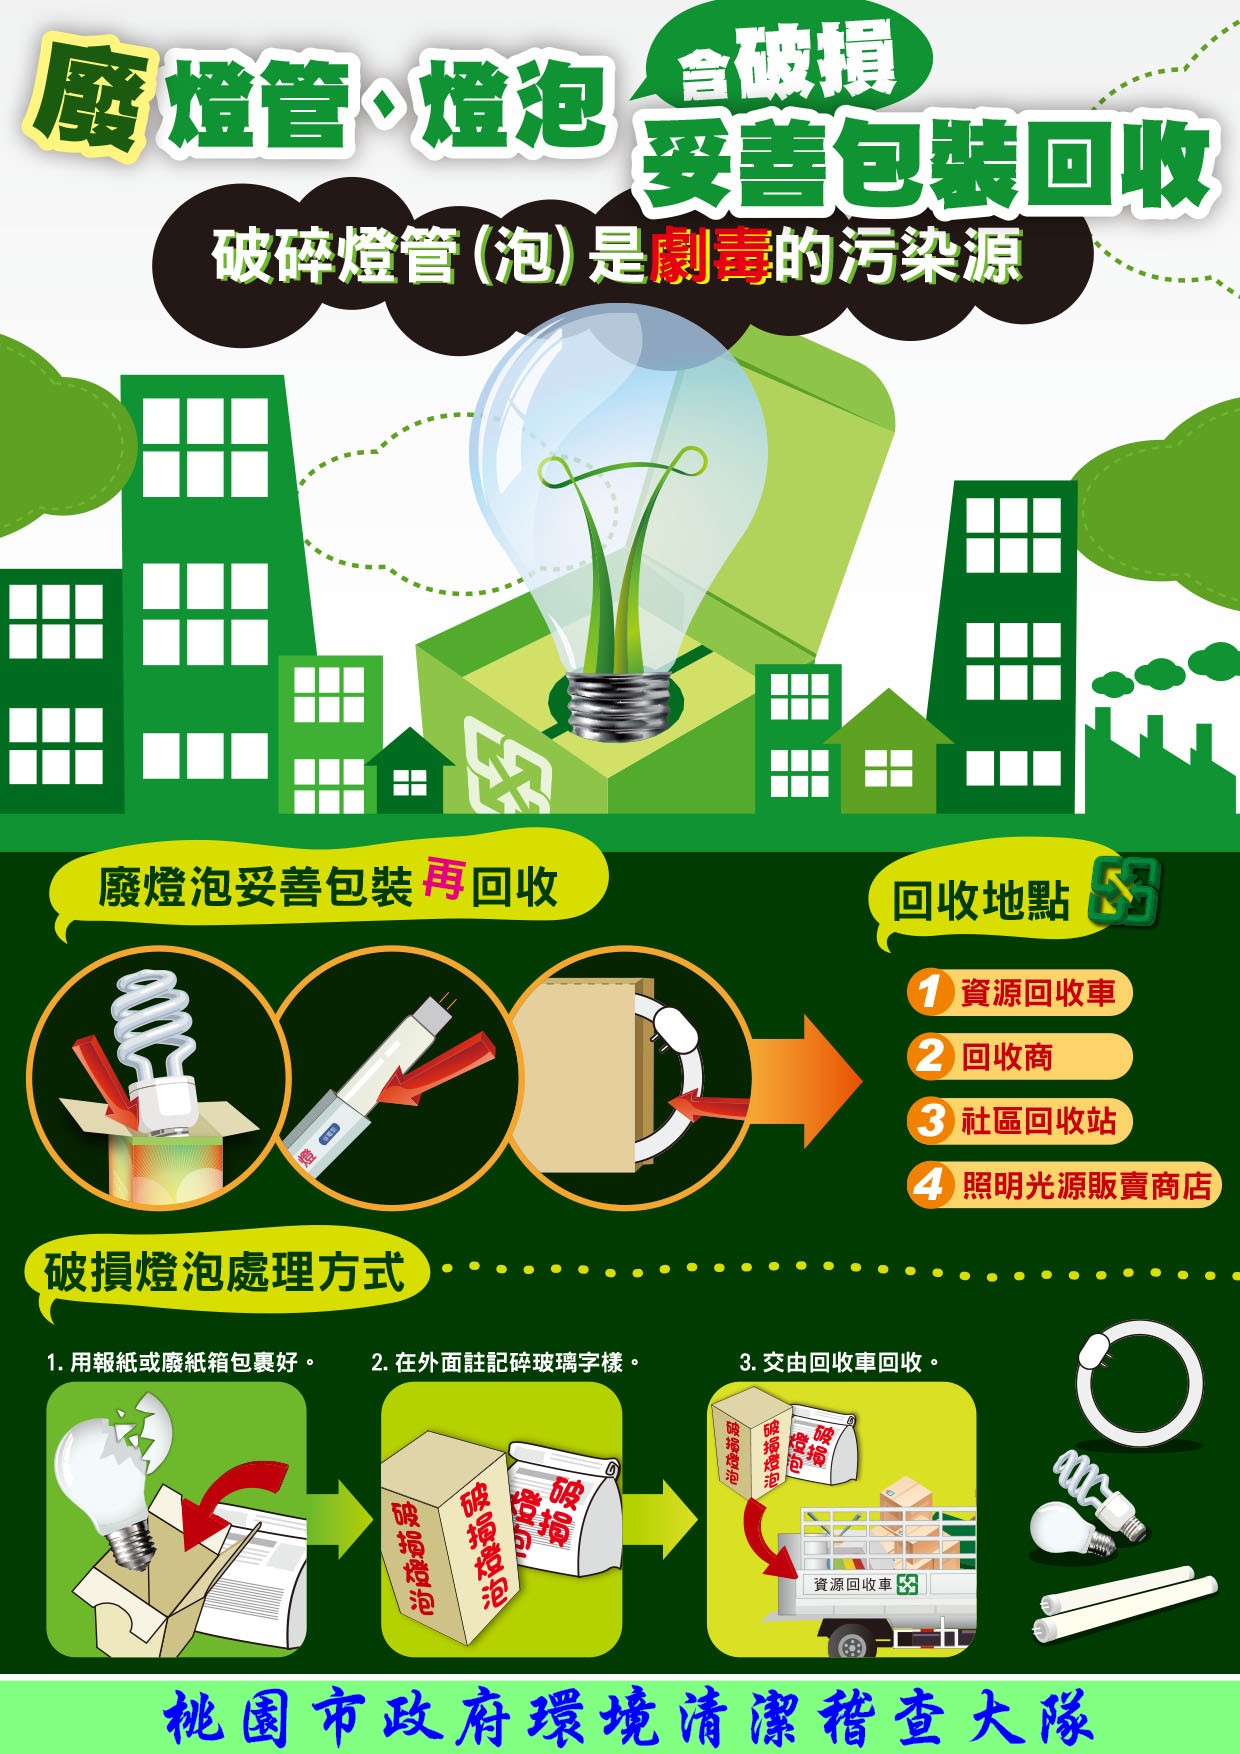 【轉知宣導】廢燈管燈泡(含破損)，請妥善保裝回收。